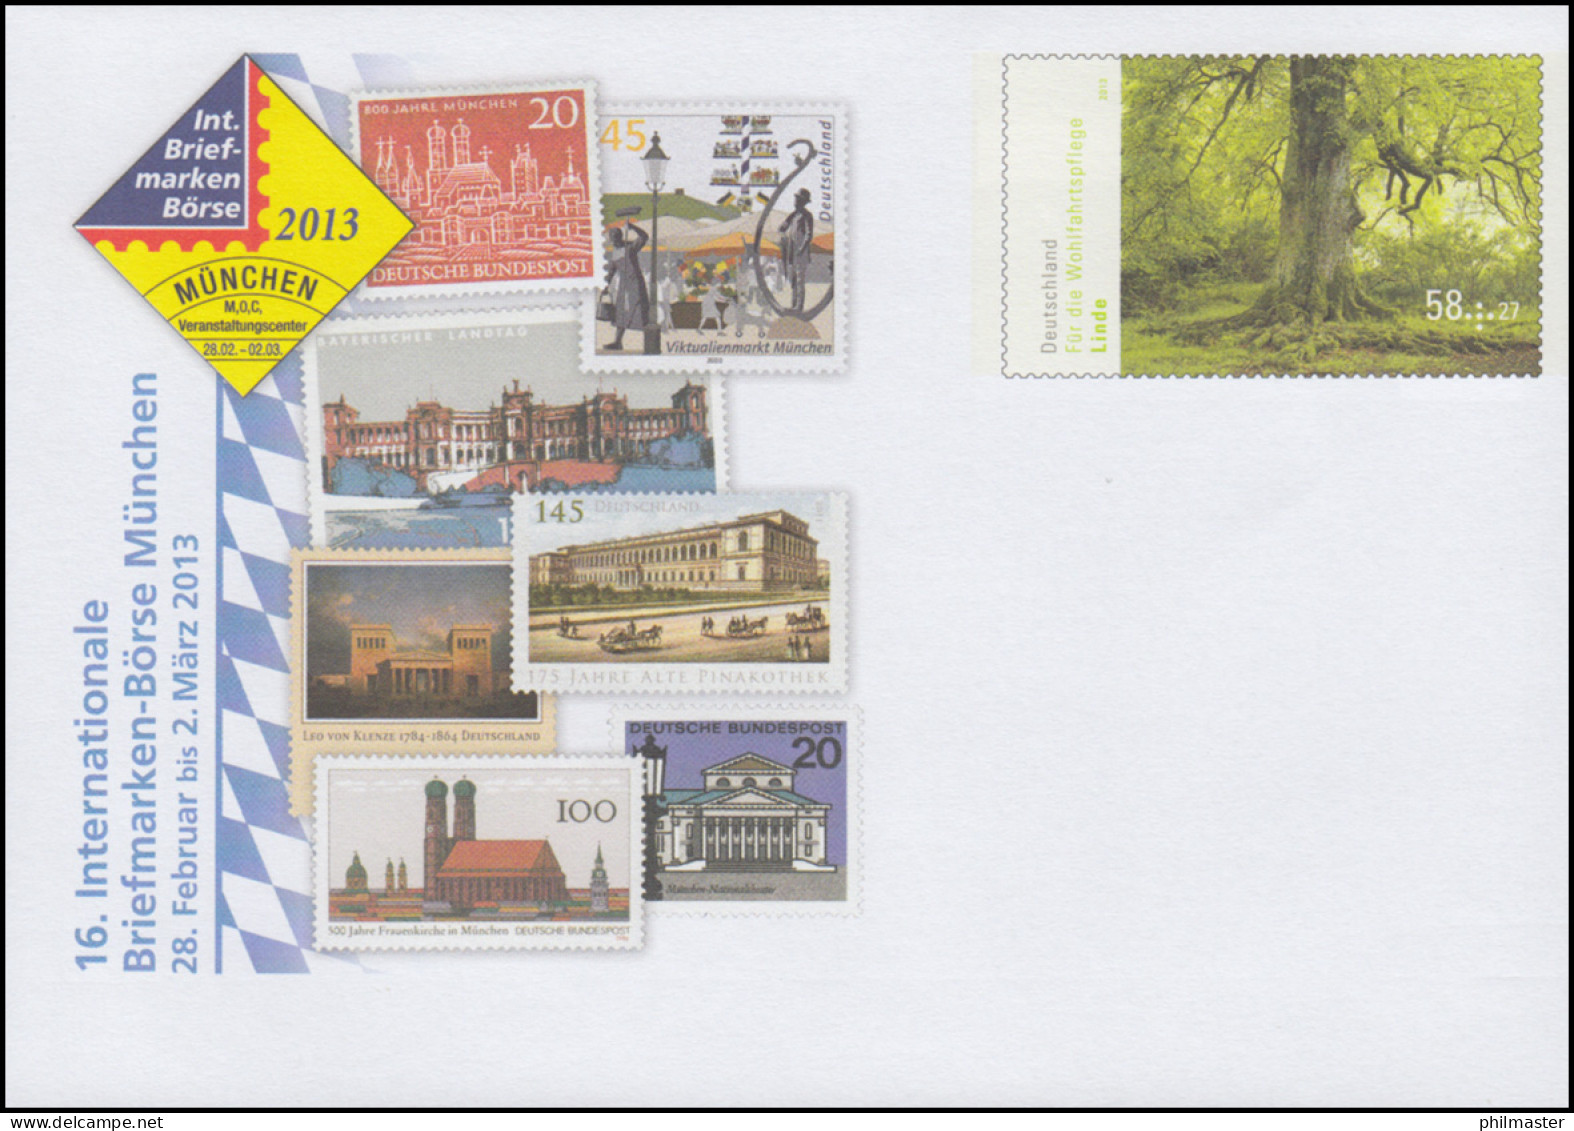 USo 283 Briefmarken-Börse München 2013, ** - Enveloppes - Neuves